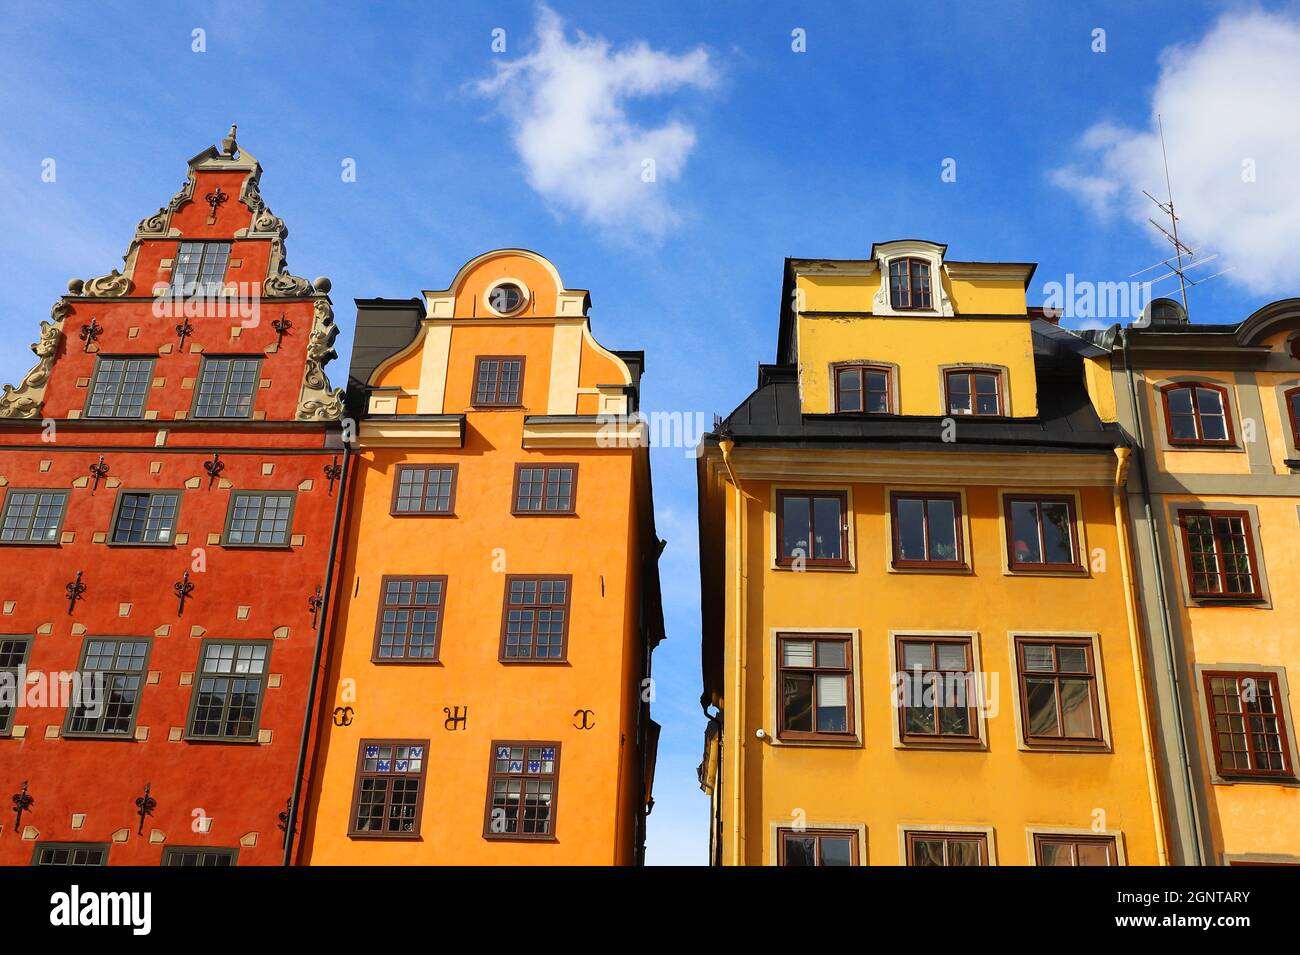 Vista en ángulo bajo de los 1670s edificios residenciales antiguos en el distrito de la ciudad vieja de Estocolmo en la plaza Stortorget. Foto de stock